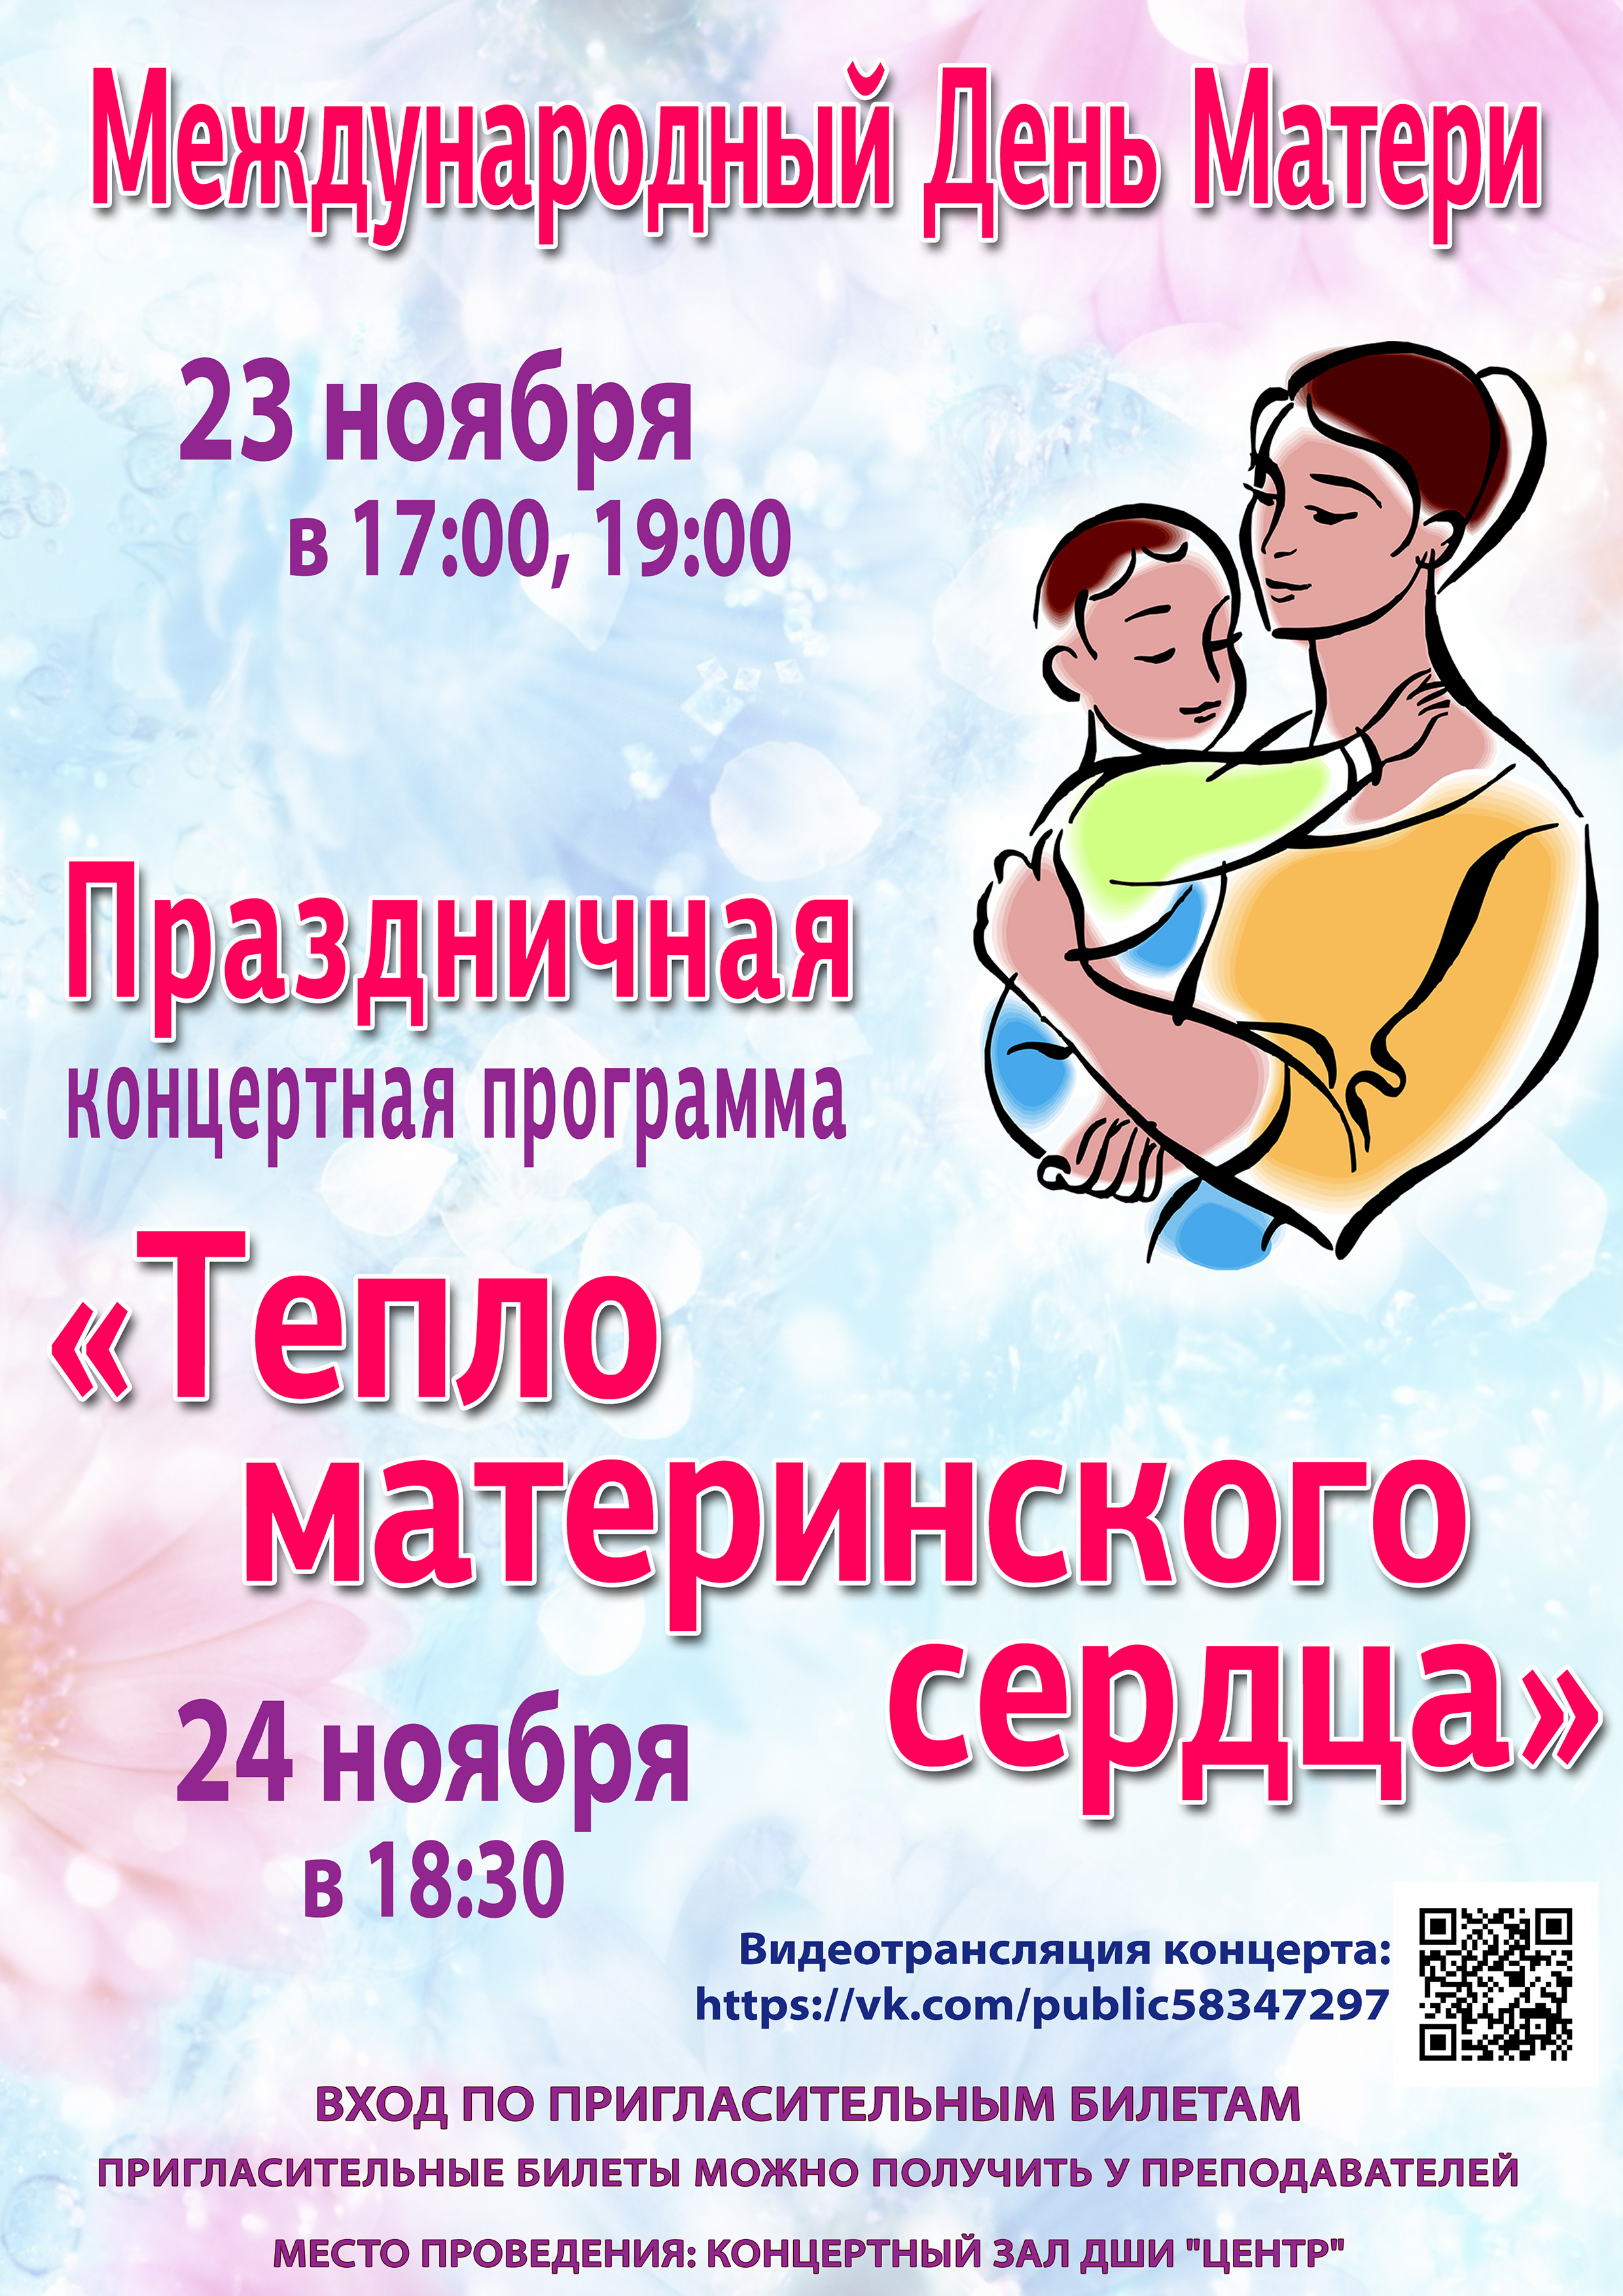 Праздничная концертная программа "Тепло материнского сердца"